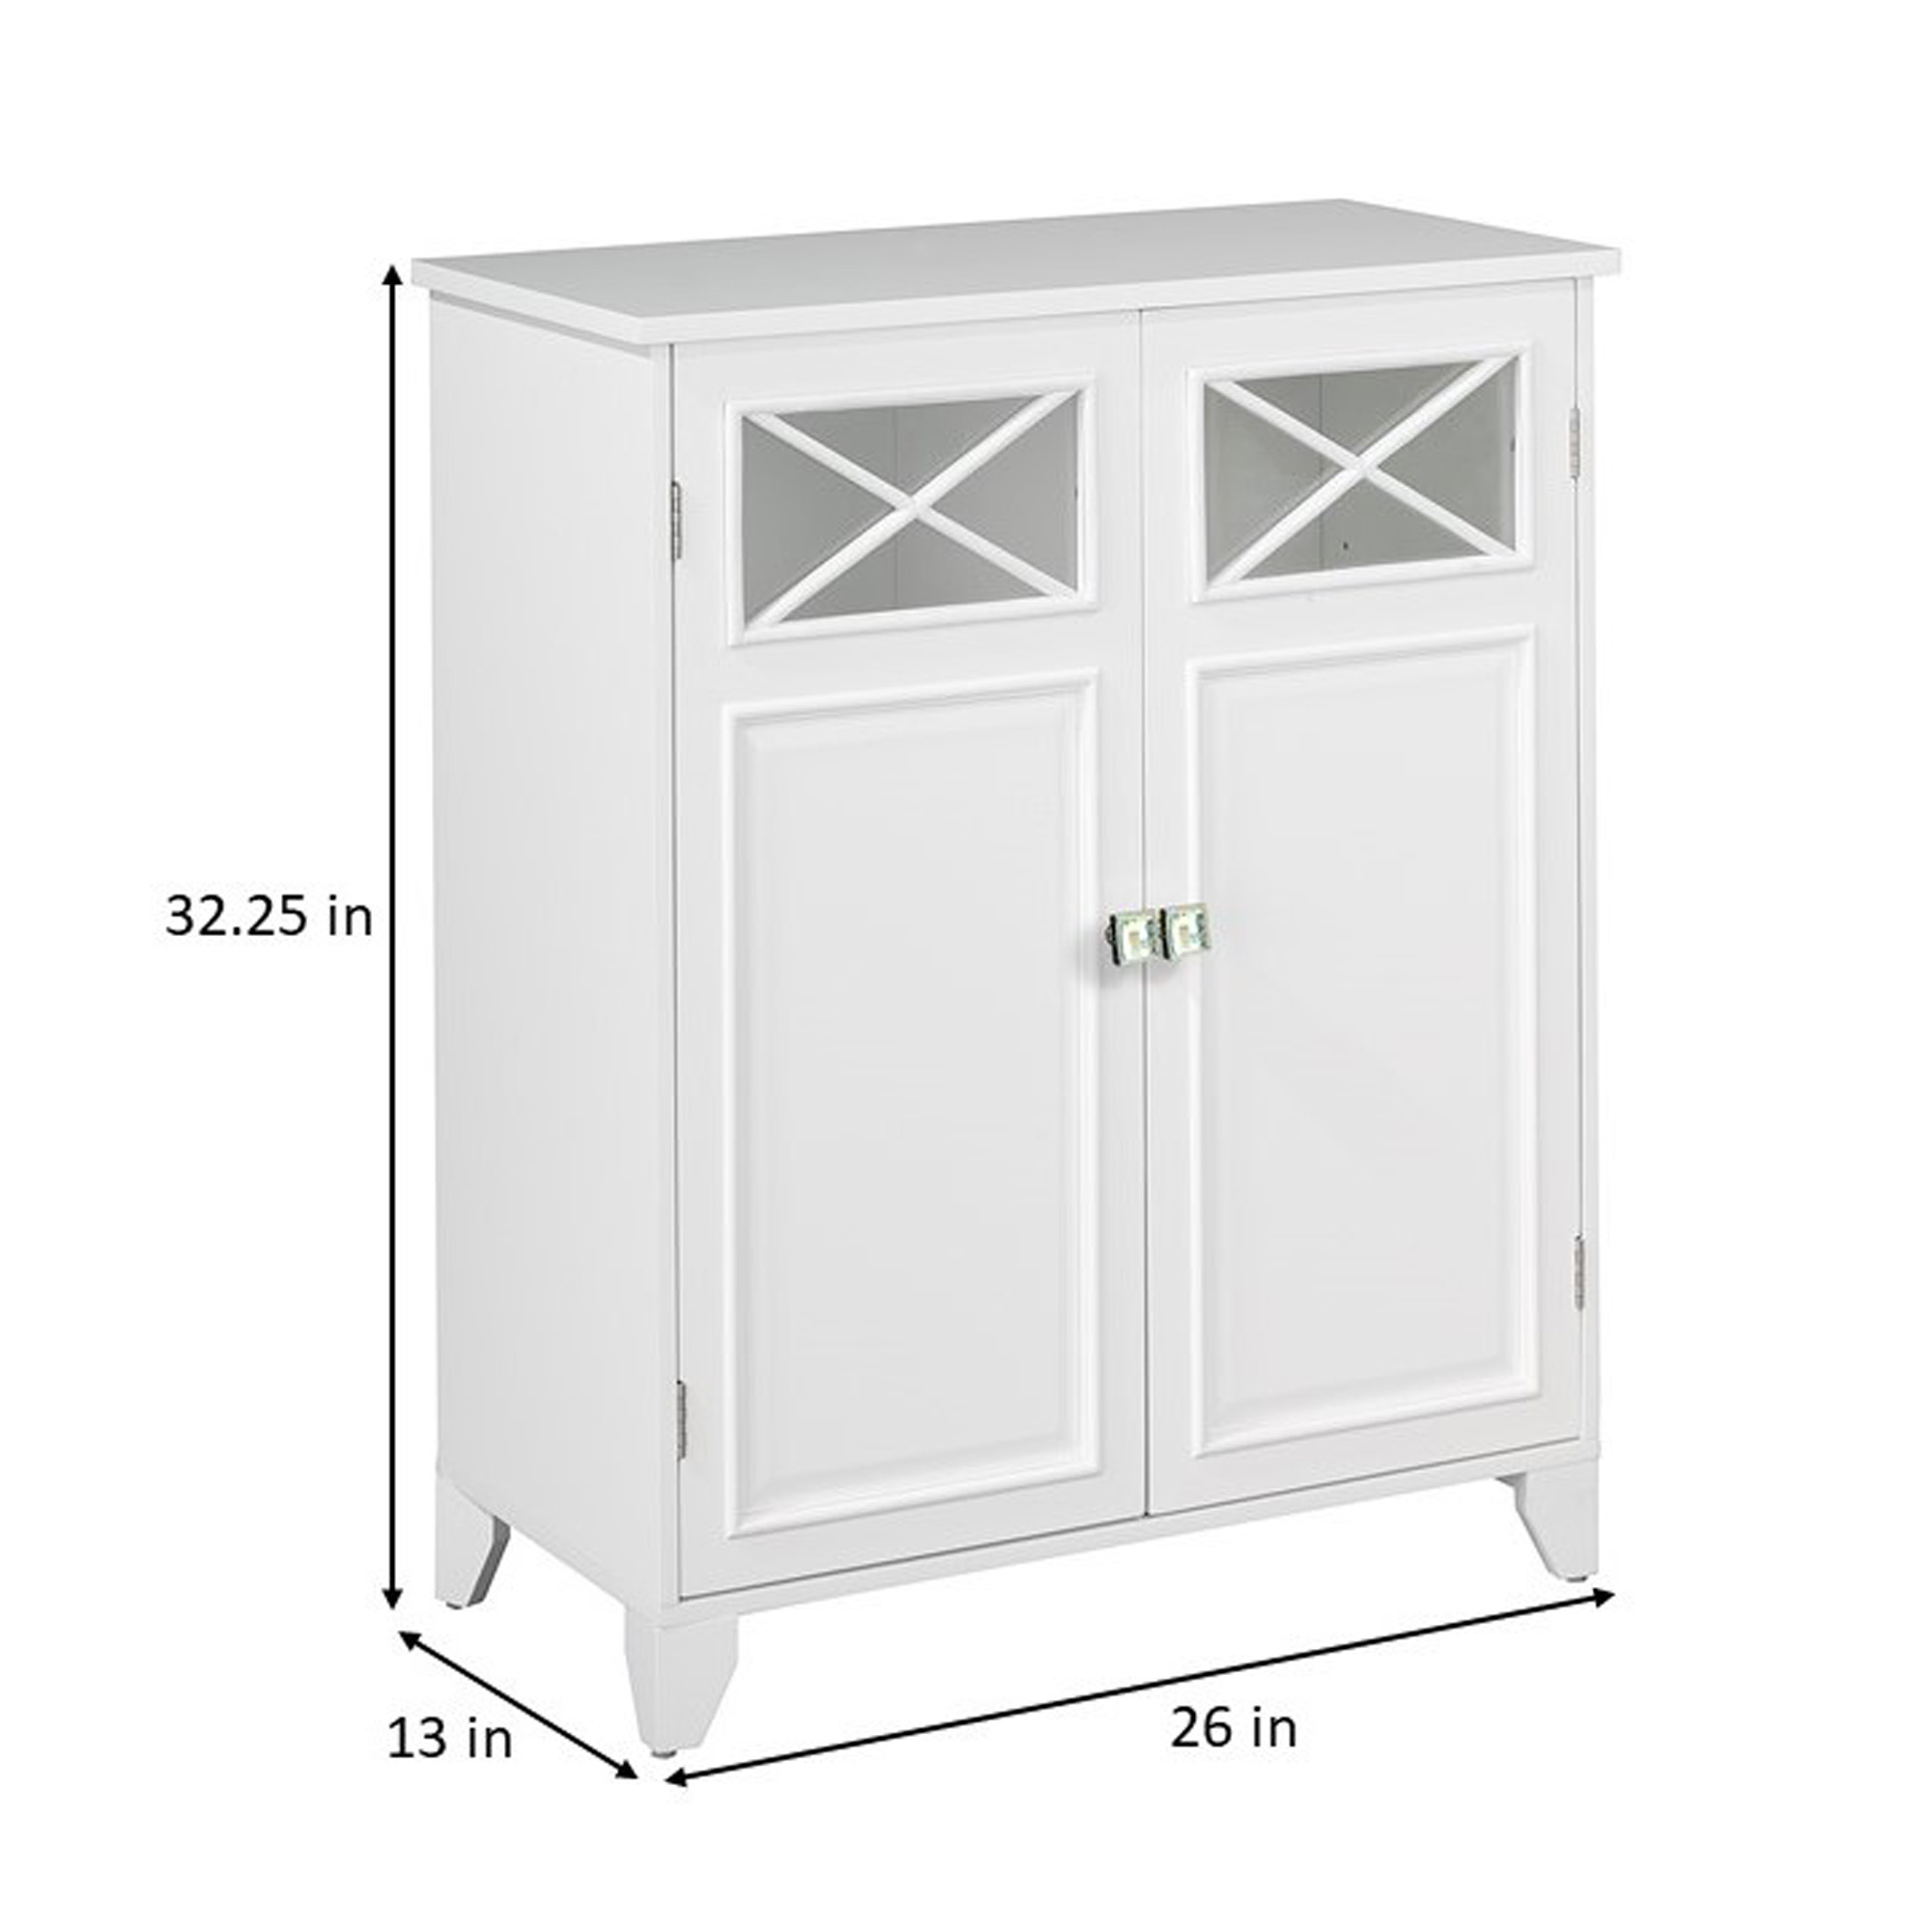 Teamson Home Dawson Two-Door Freestanding Floor Cabinet